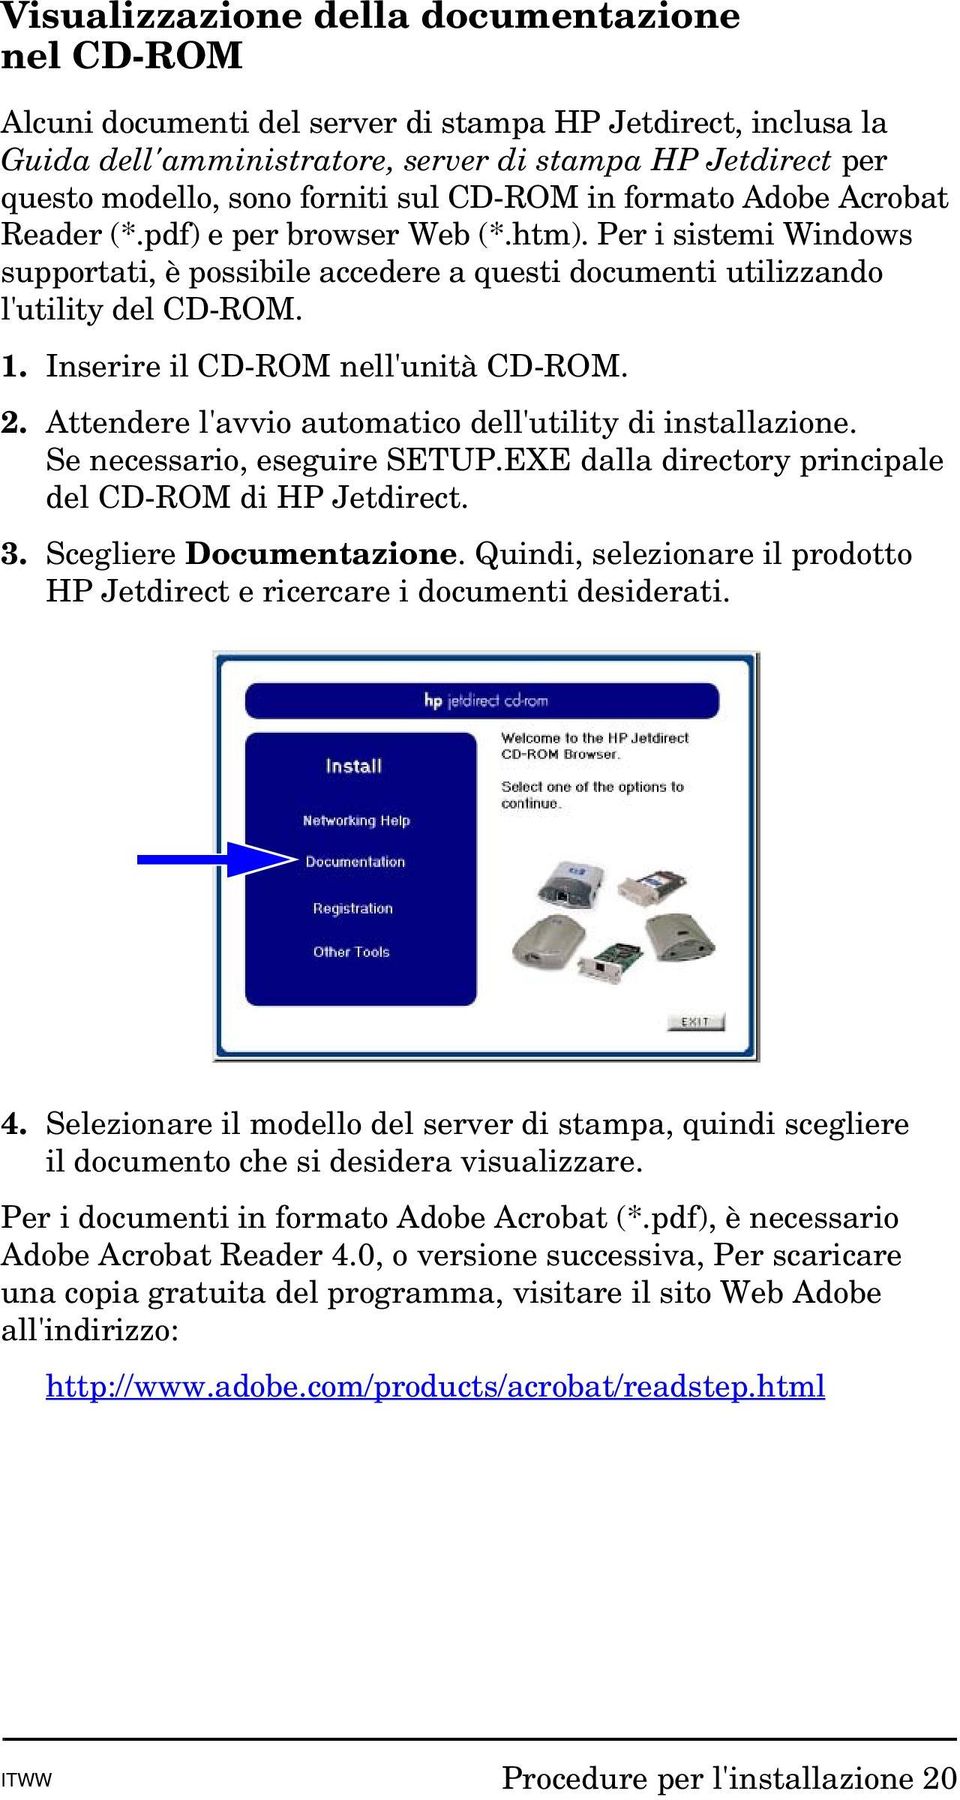 Inserire il CD-ROM nell'unità CD-ROM. 2. Attendere l'avvio automatico dell'utility di installazione. Se necessario, eseguire SETUP.EXE dalla directory principale del CD-ROM di HP Jetdirect. 3.